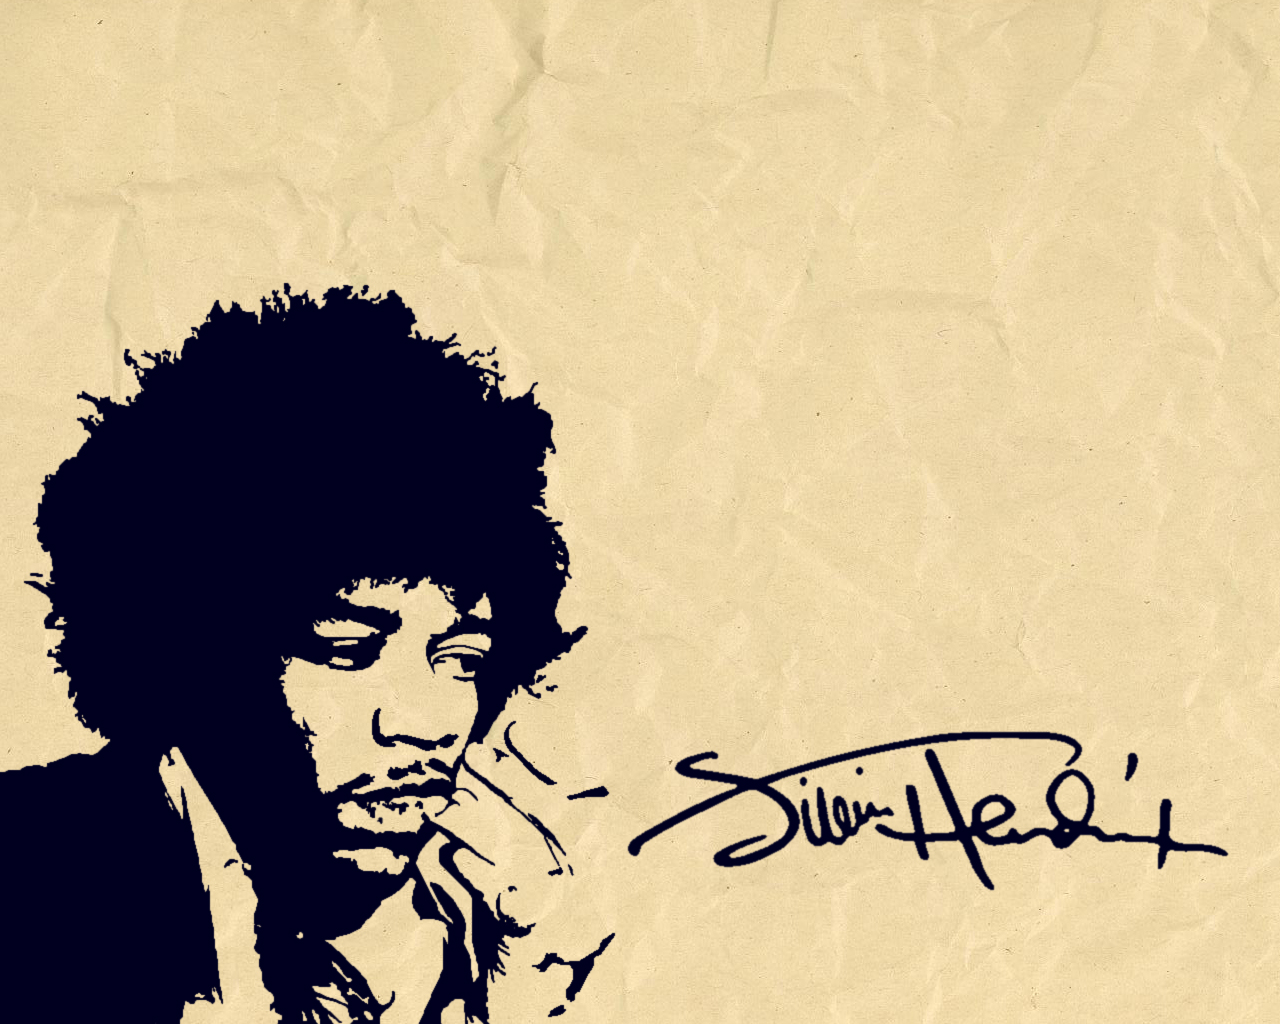 DeviantArt More Like Jimi Hendrix Wallpaper by Feenster64